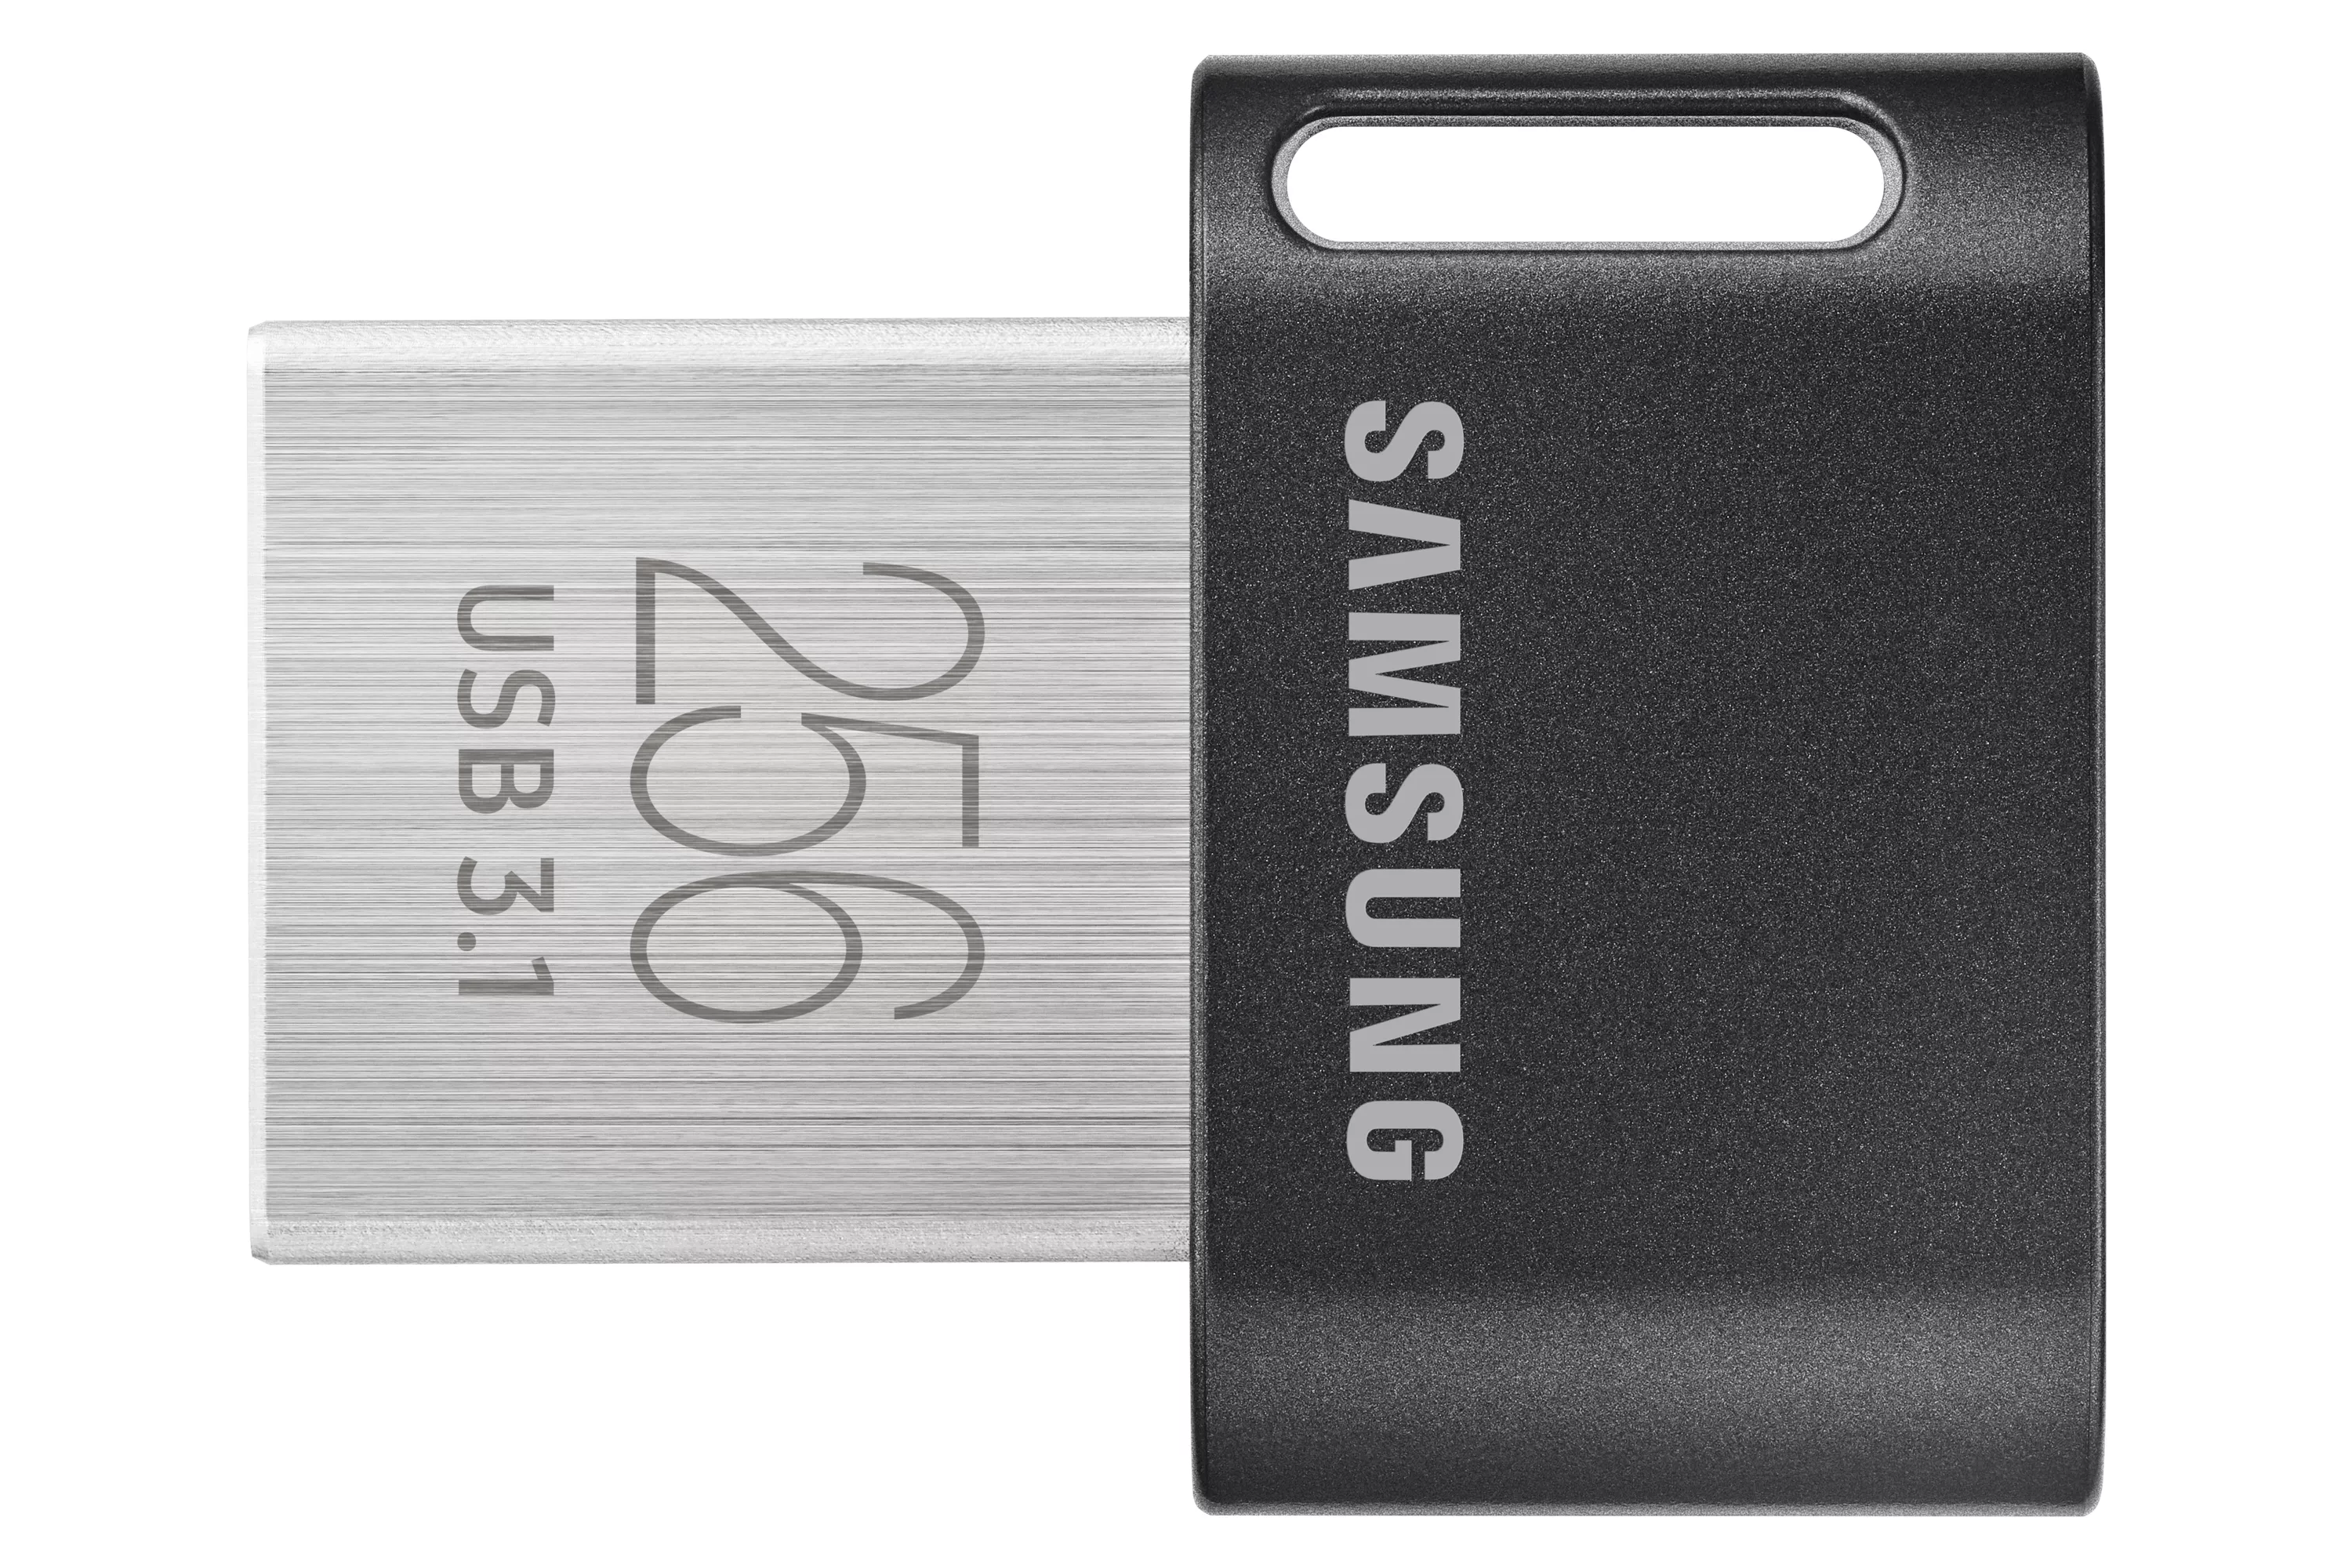 Achat SAMSUNG FIT PLUS 256Go USB 3.1 sur hello RSE